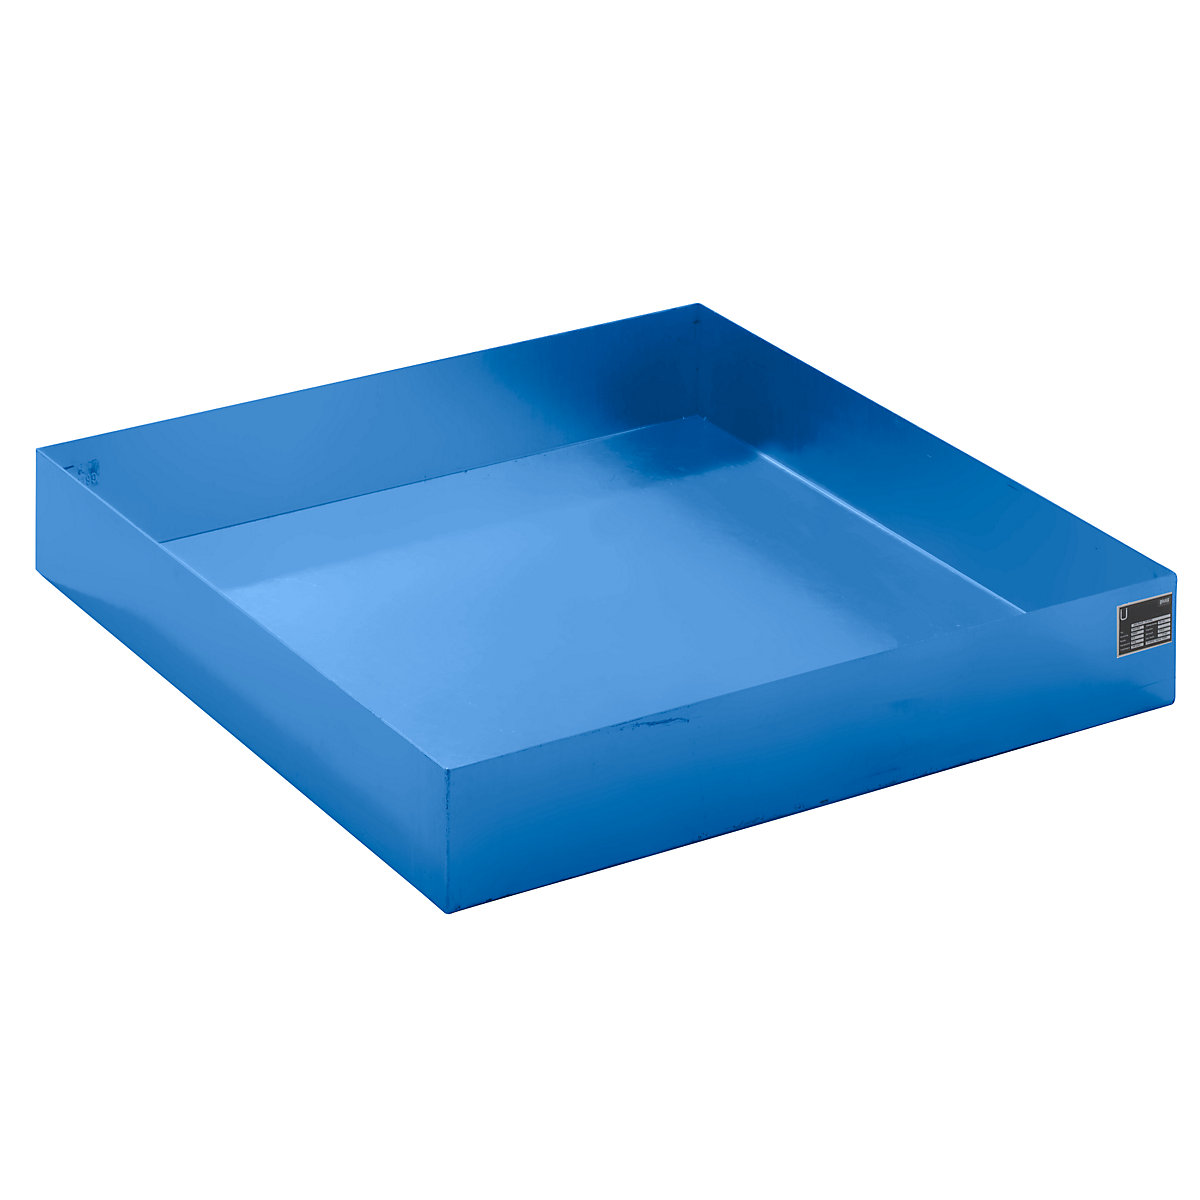 EUROKRAFTbasic – Pallet sump tray, LxWxH 1200 x 1200 x 185 mm, blue RAL 5012